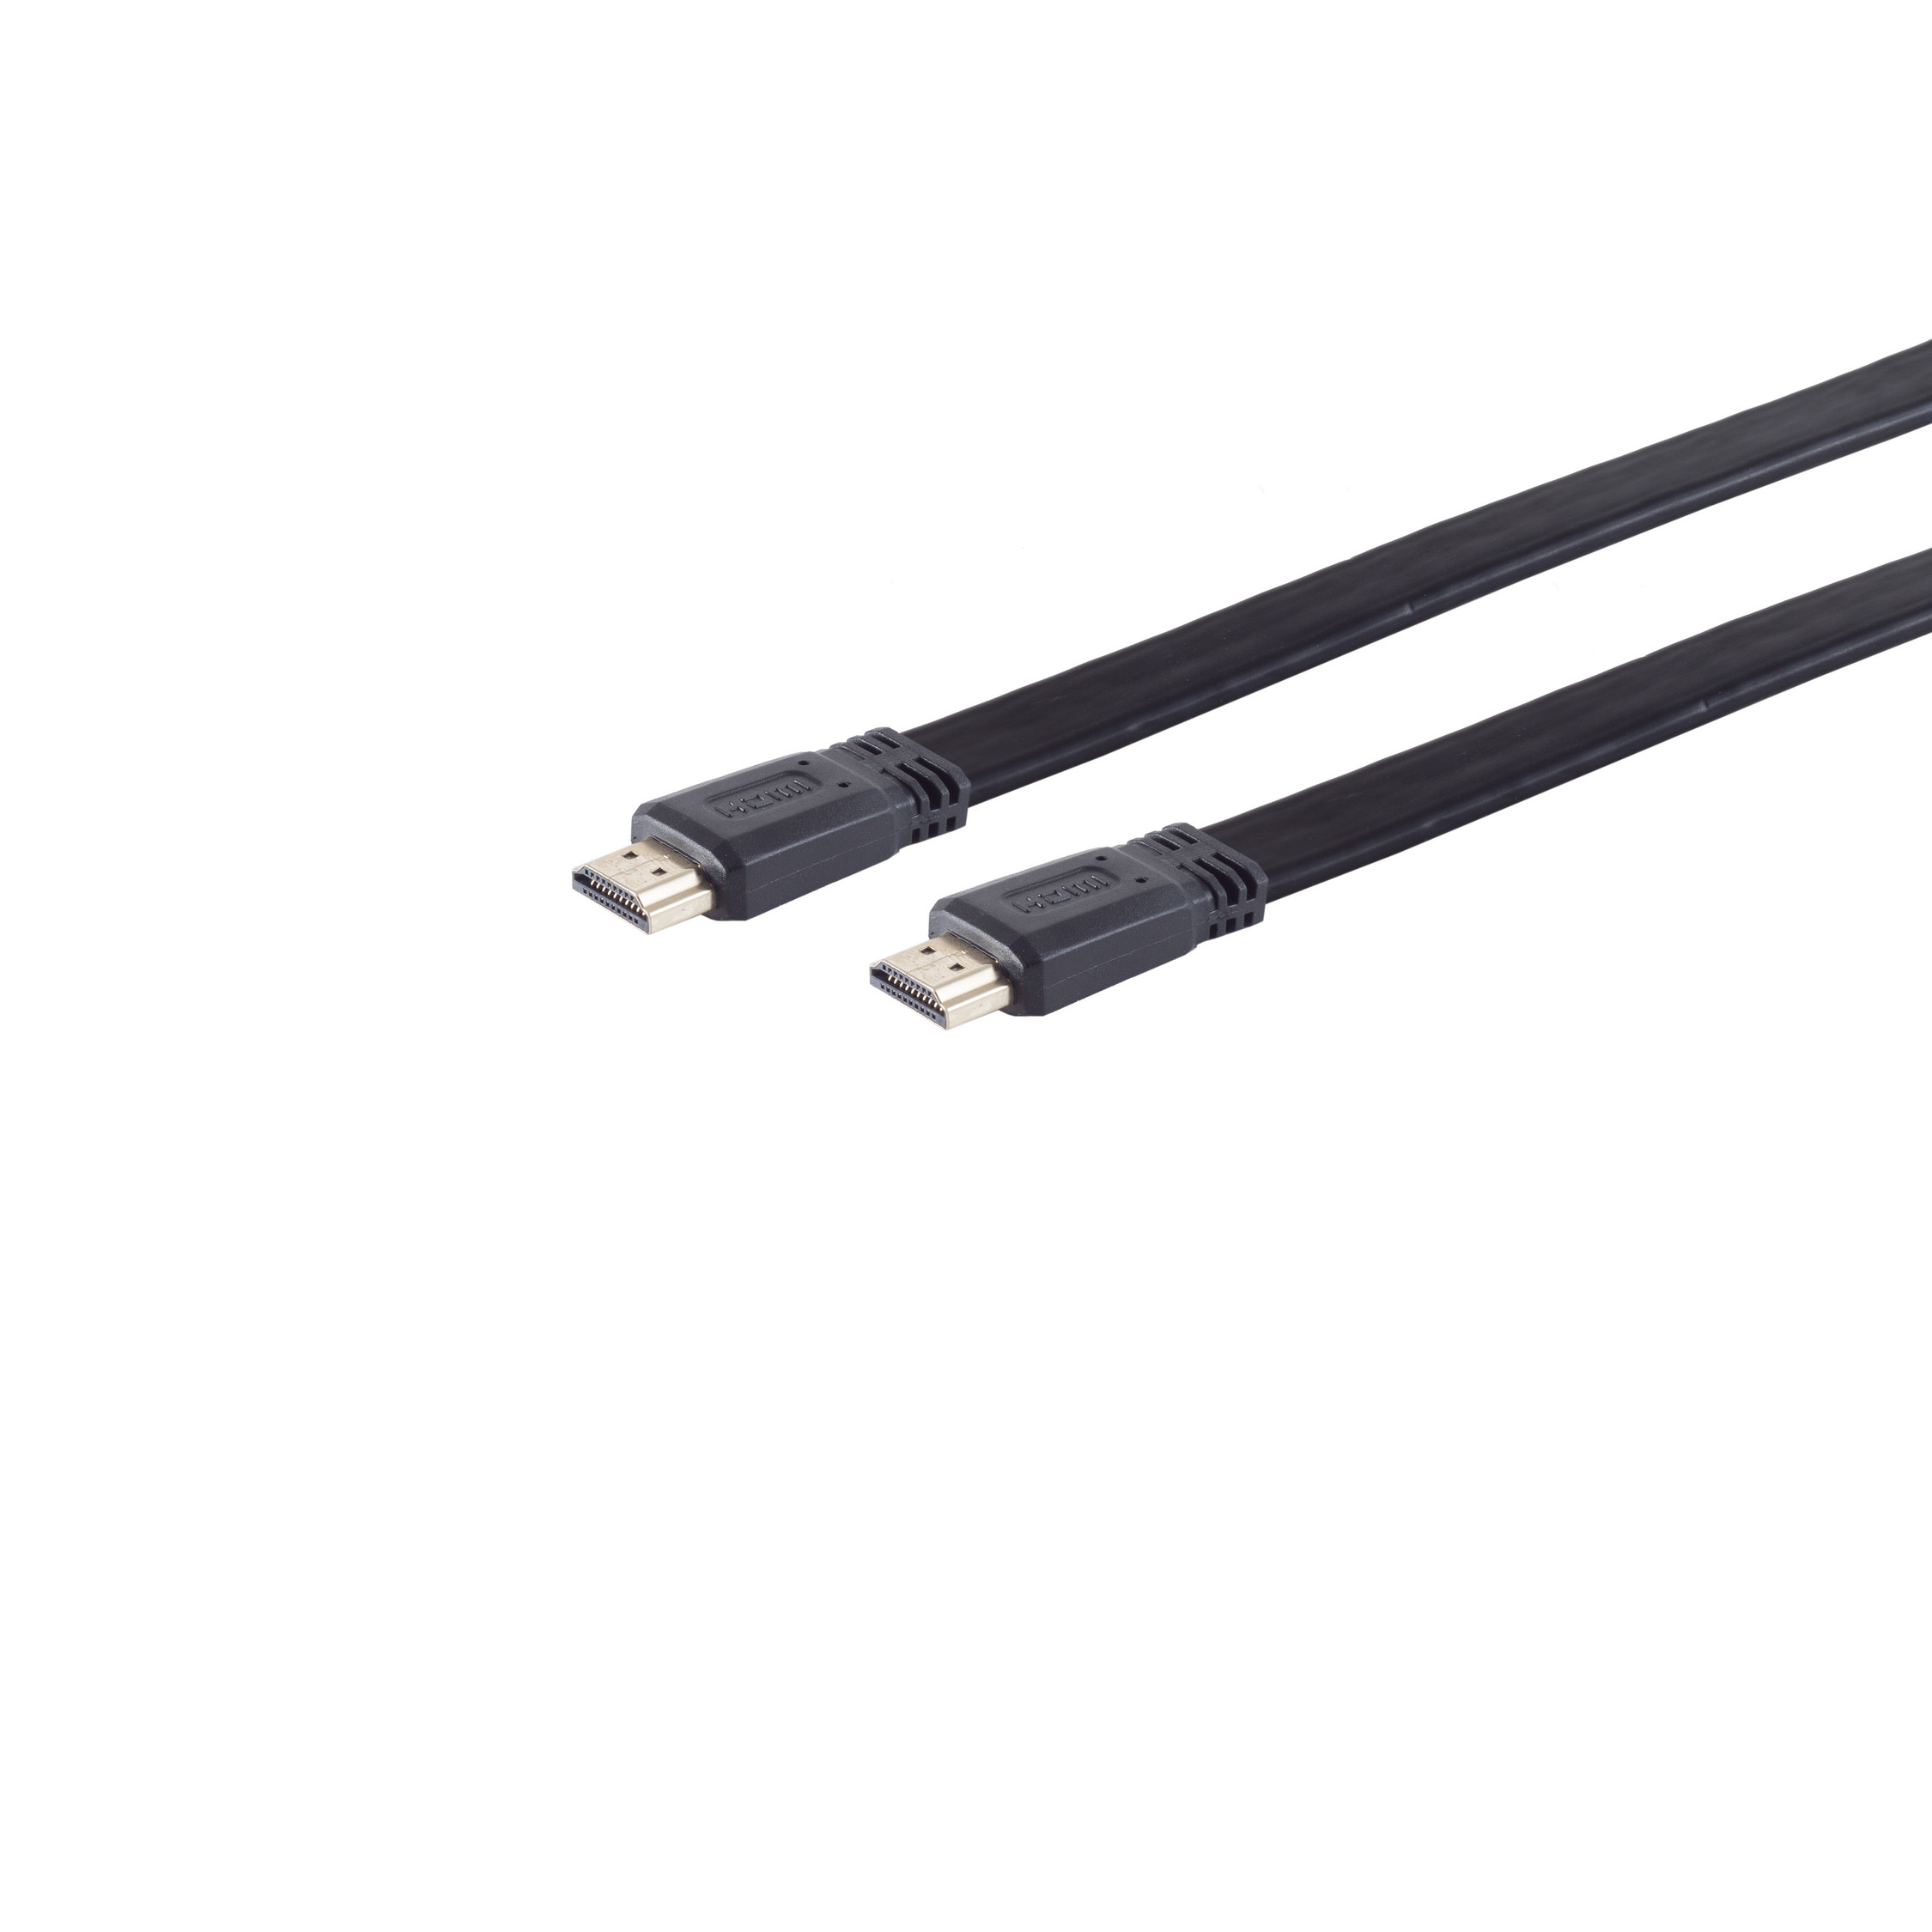 HEAC FLACH Kabel / S/CONN MAXIMUM HDMI CONNECTIVITY A-St 2m HDMI A-St. verg. HDMI